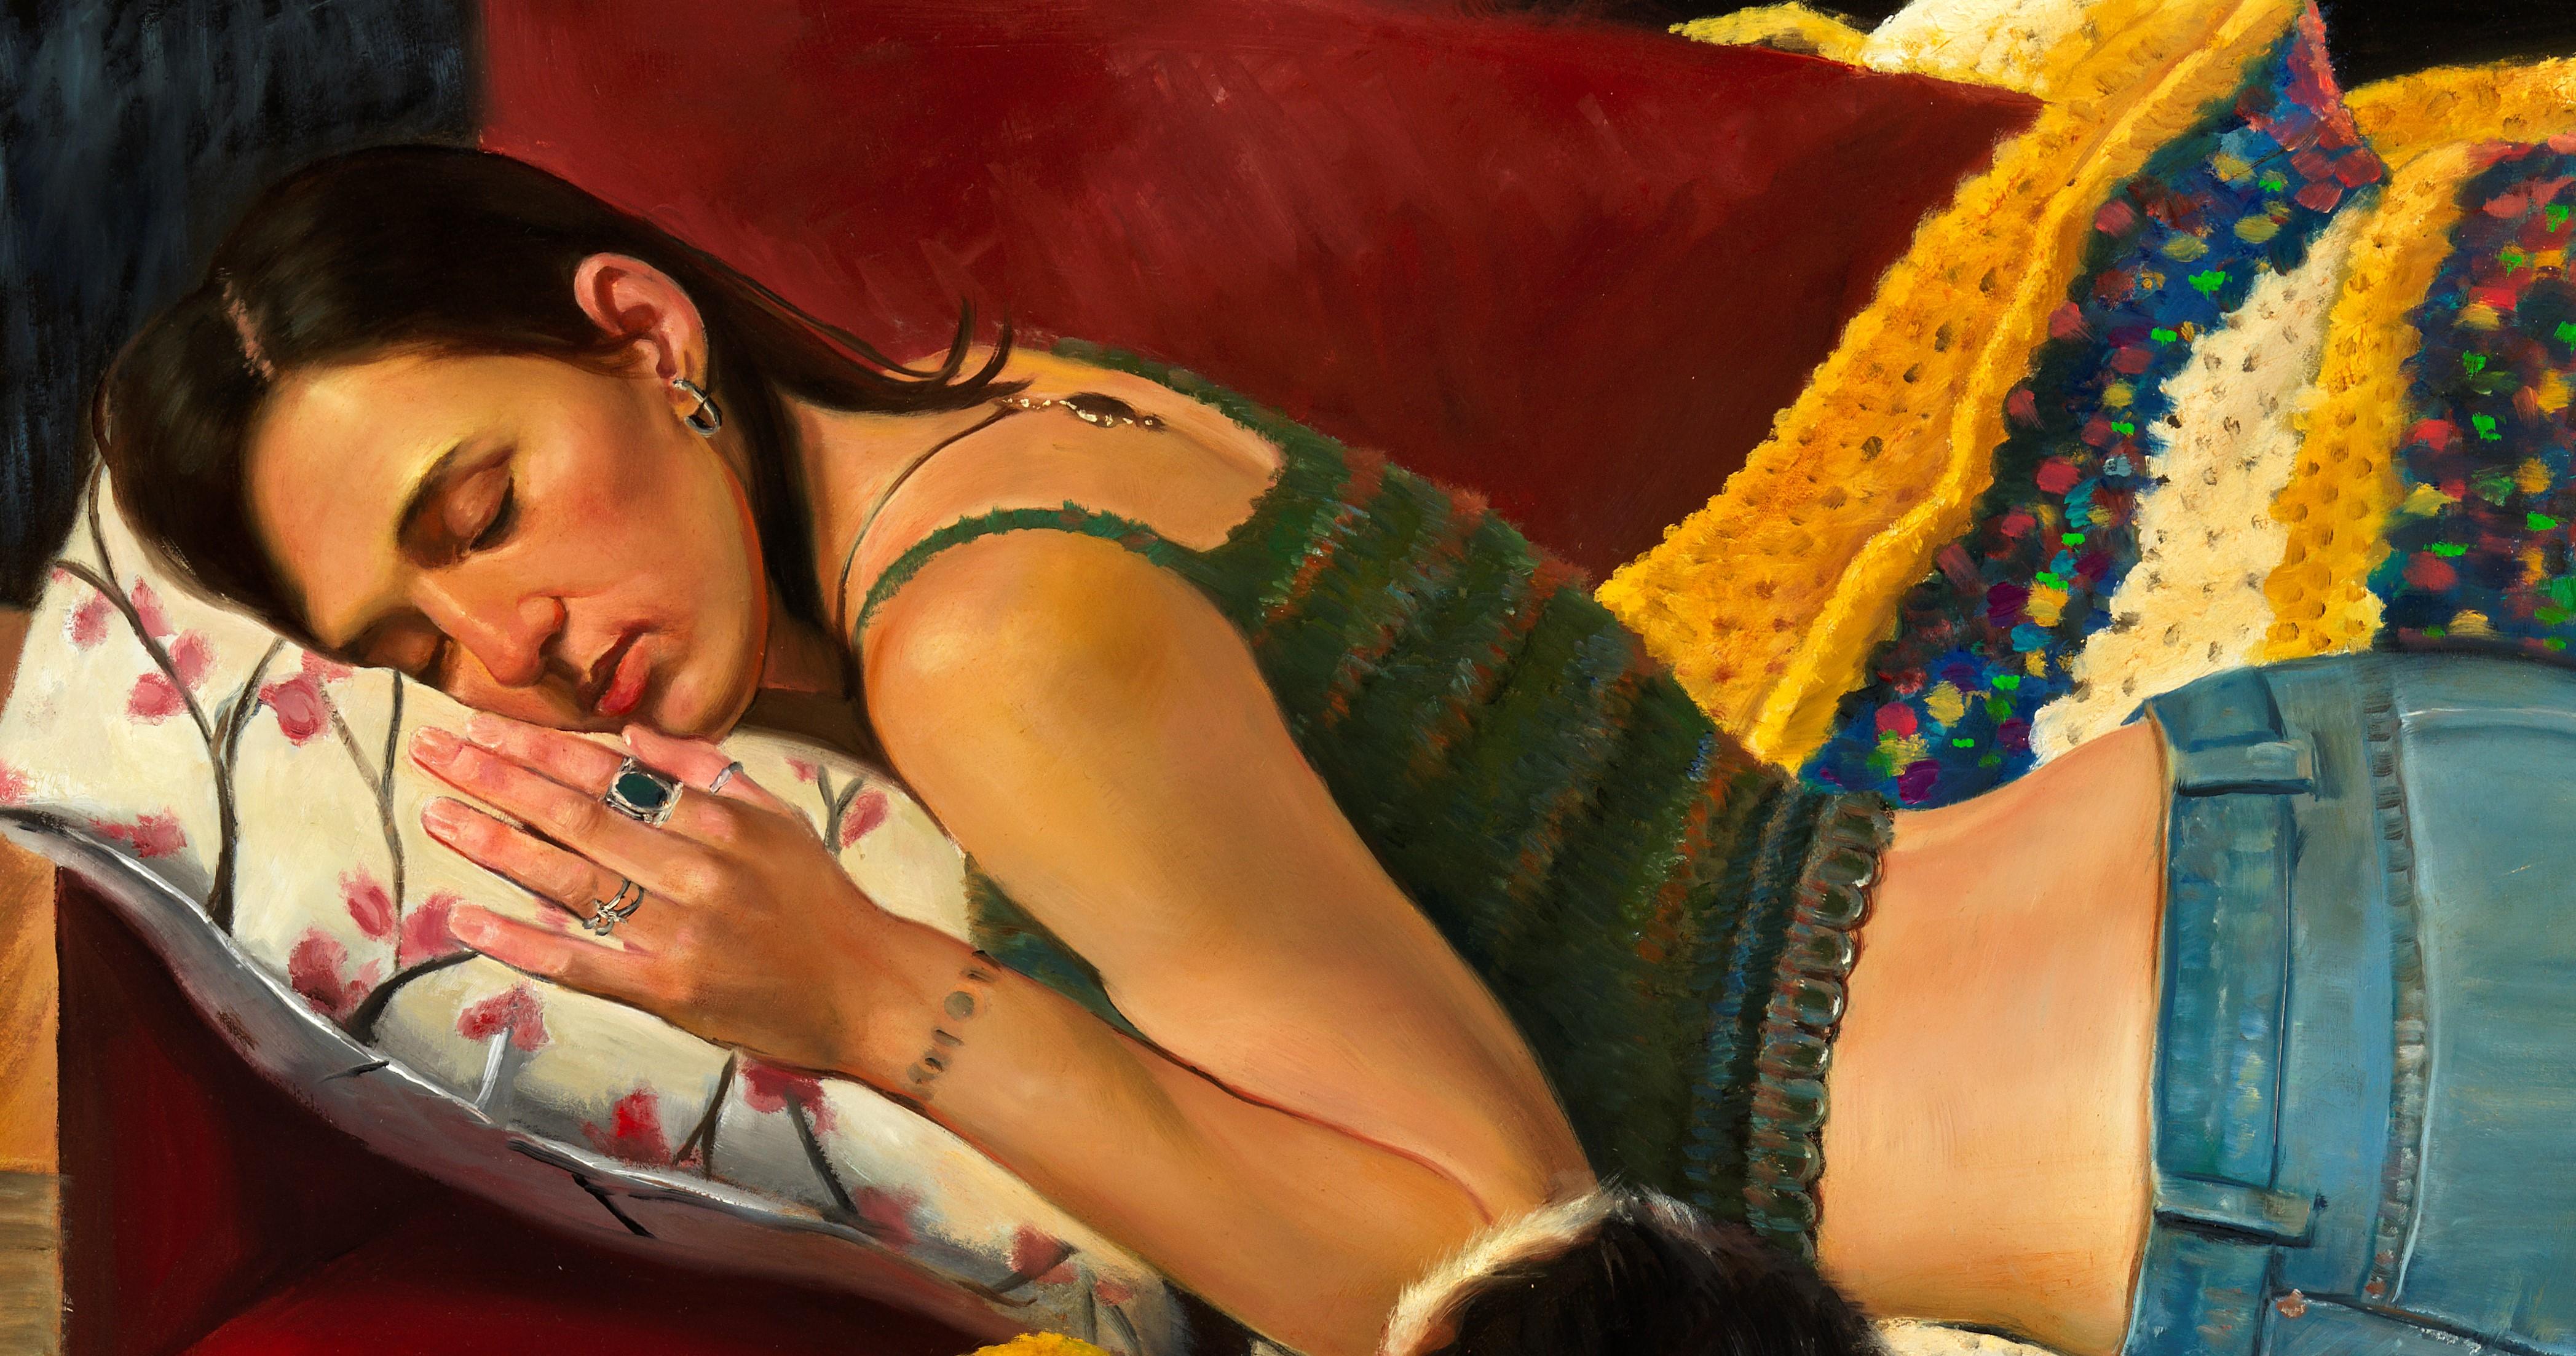  Bliss intérieur, trois femmes et un chien, scène d'intérieur, couleurs vives Huile sur toile - Painting de Bruno Surdo